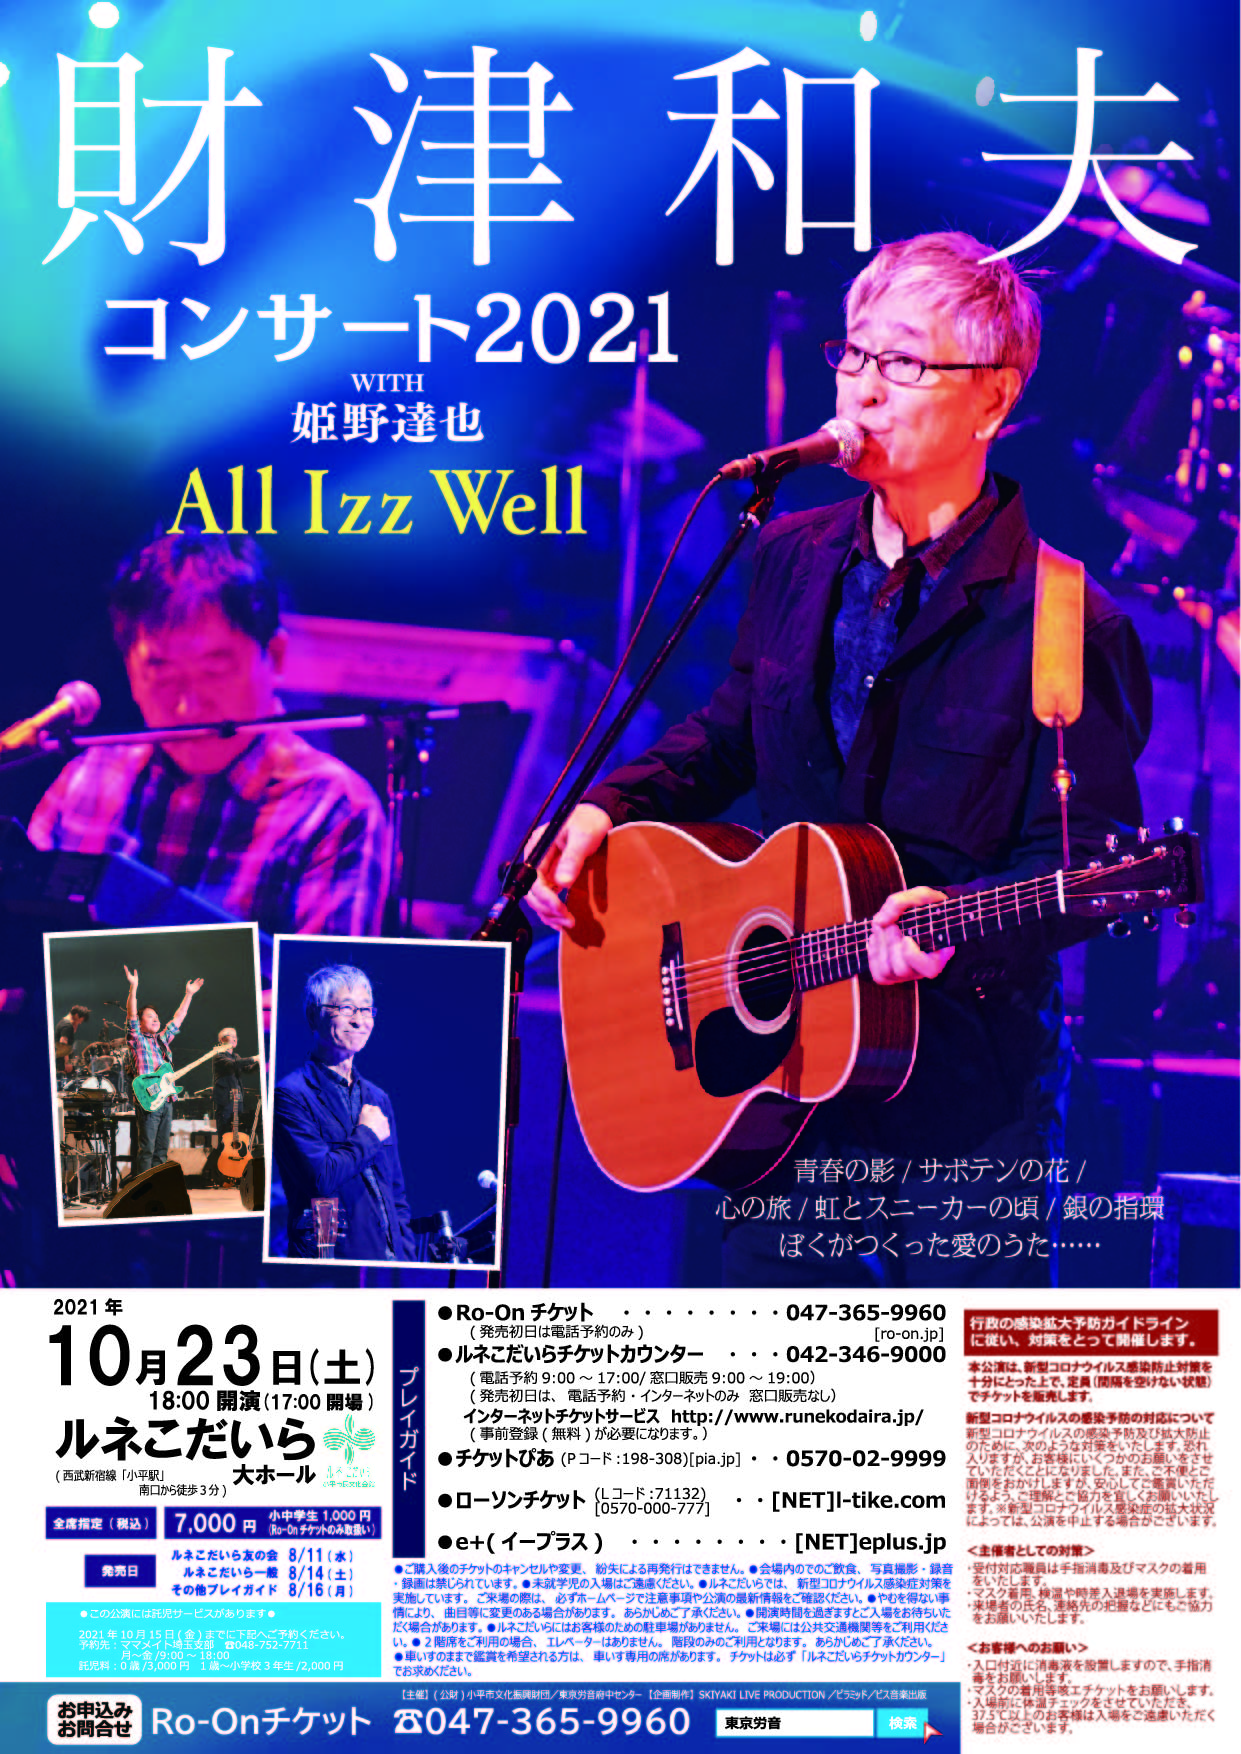 財津和夫コンサート2021のチラシの画像